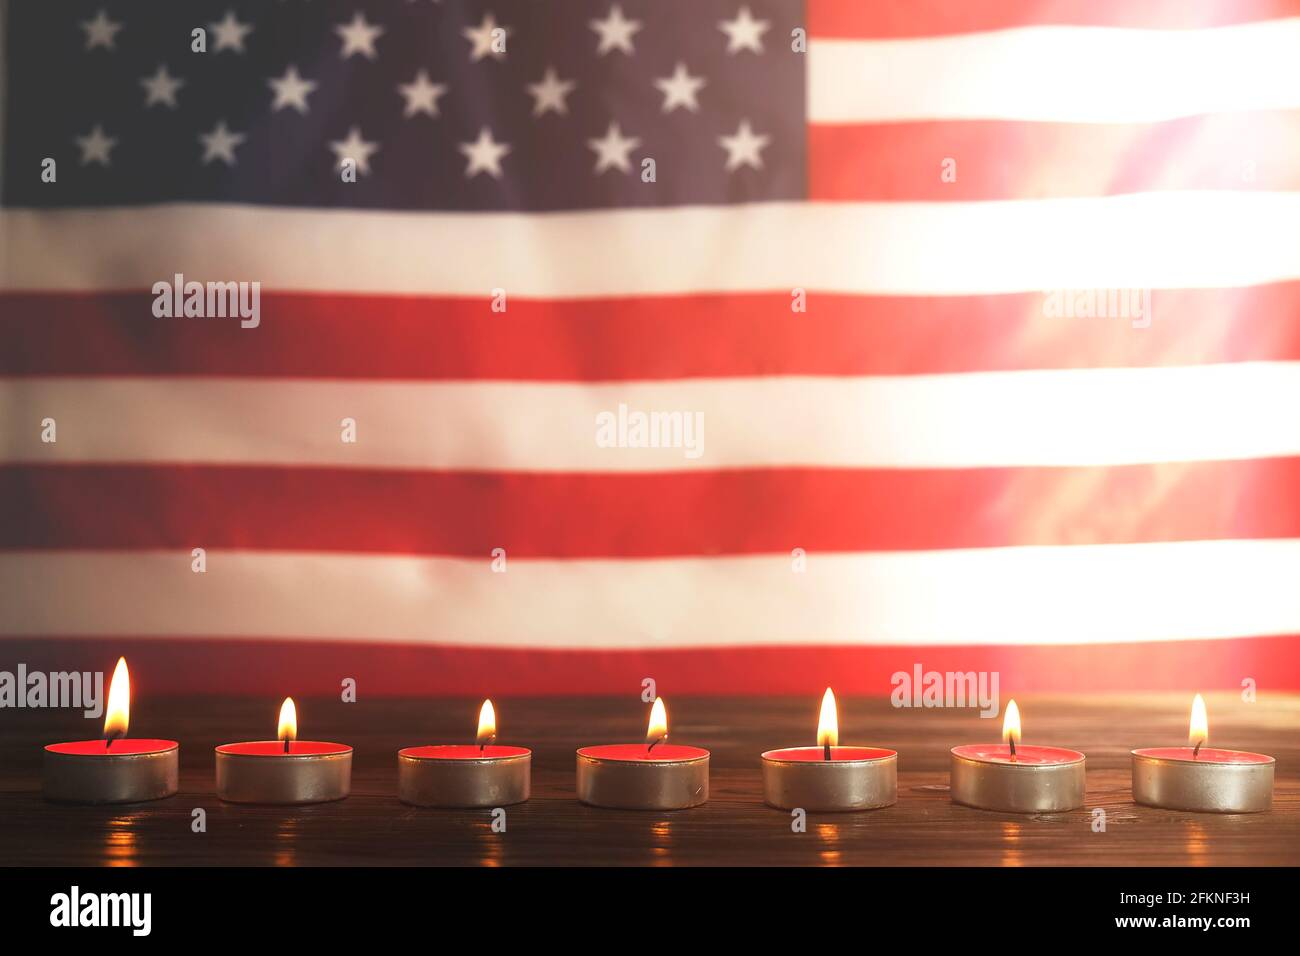 Deuil de bougies allumées sur fond de drapeau national américain. Week-end du souvenir, journée des anciens combattants patriotes, 9/11 Journée nationale du service et du souvenir. Banque D'Images